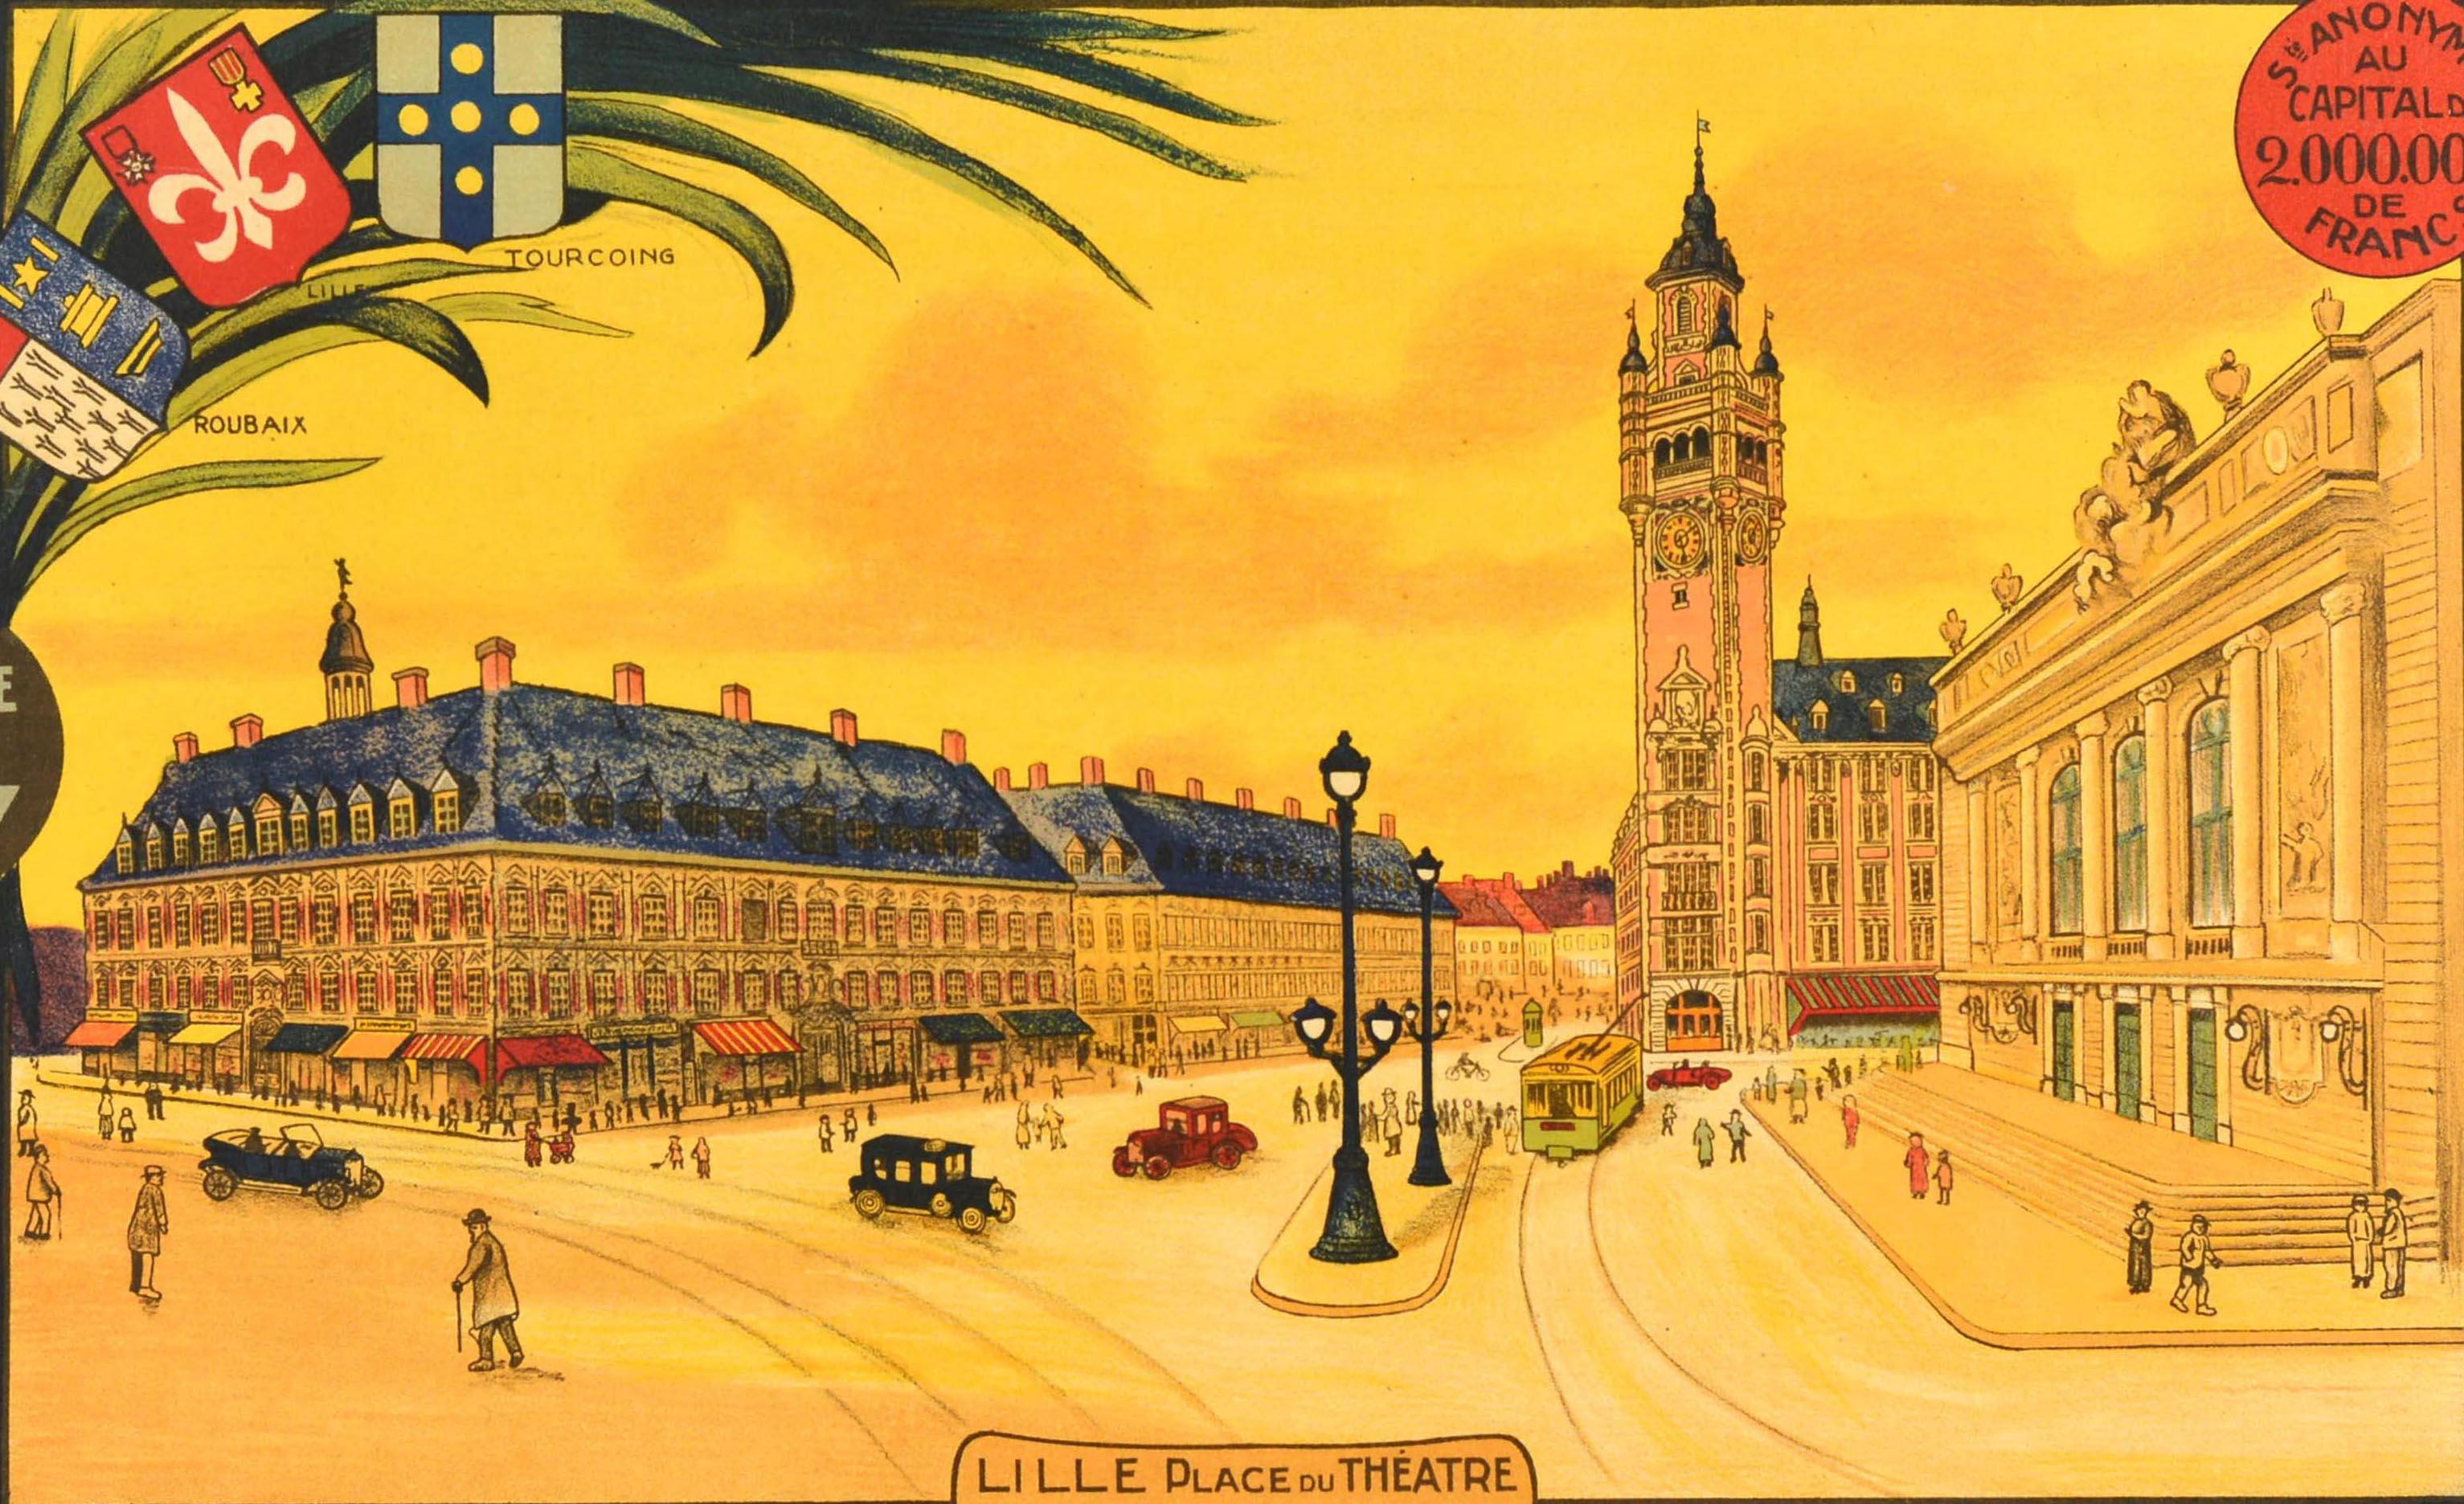 Original Vintage-Werbeplakat für die 1876 gegründete Union Generale Du Nord Cie Locale d'Assurance Contre l'Incendie Siege Social a Lille 37 Boulevard de la Liberte - mit einer beeindruckenden Illustration in Gelbtönen, die Menschen zeigt,